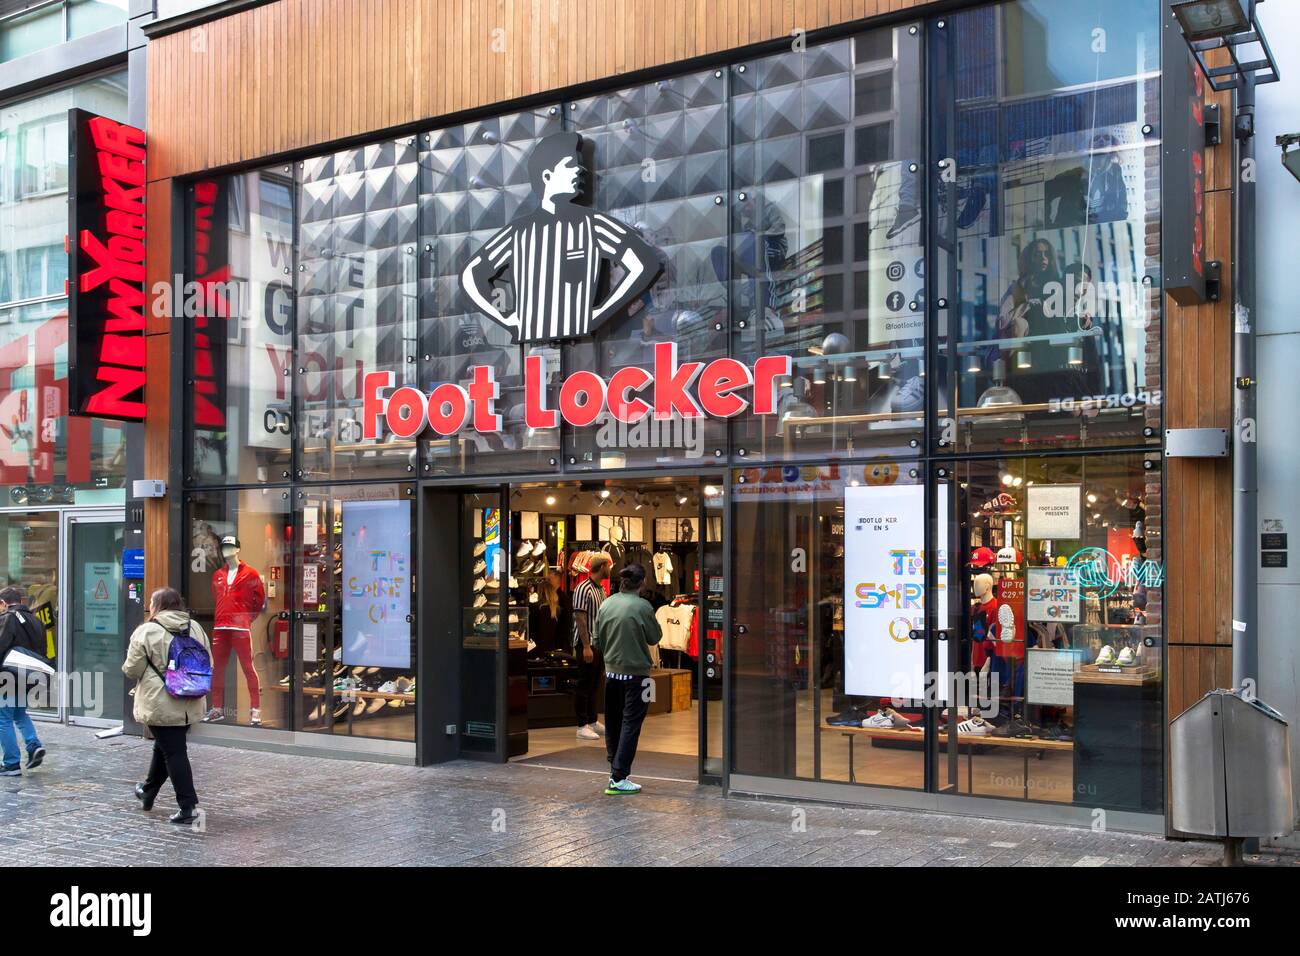 Foot Locker, negozio di abbigliamento sportivo sulla strada dello shopping Hohe Strasse, Colonia, Germania. Sportfachgeschaeft Foot Locker auf der Einkaufsstrasse Hohe S. Foto Stock